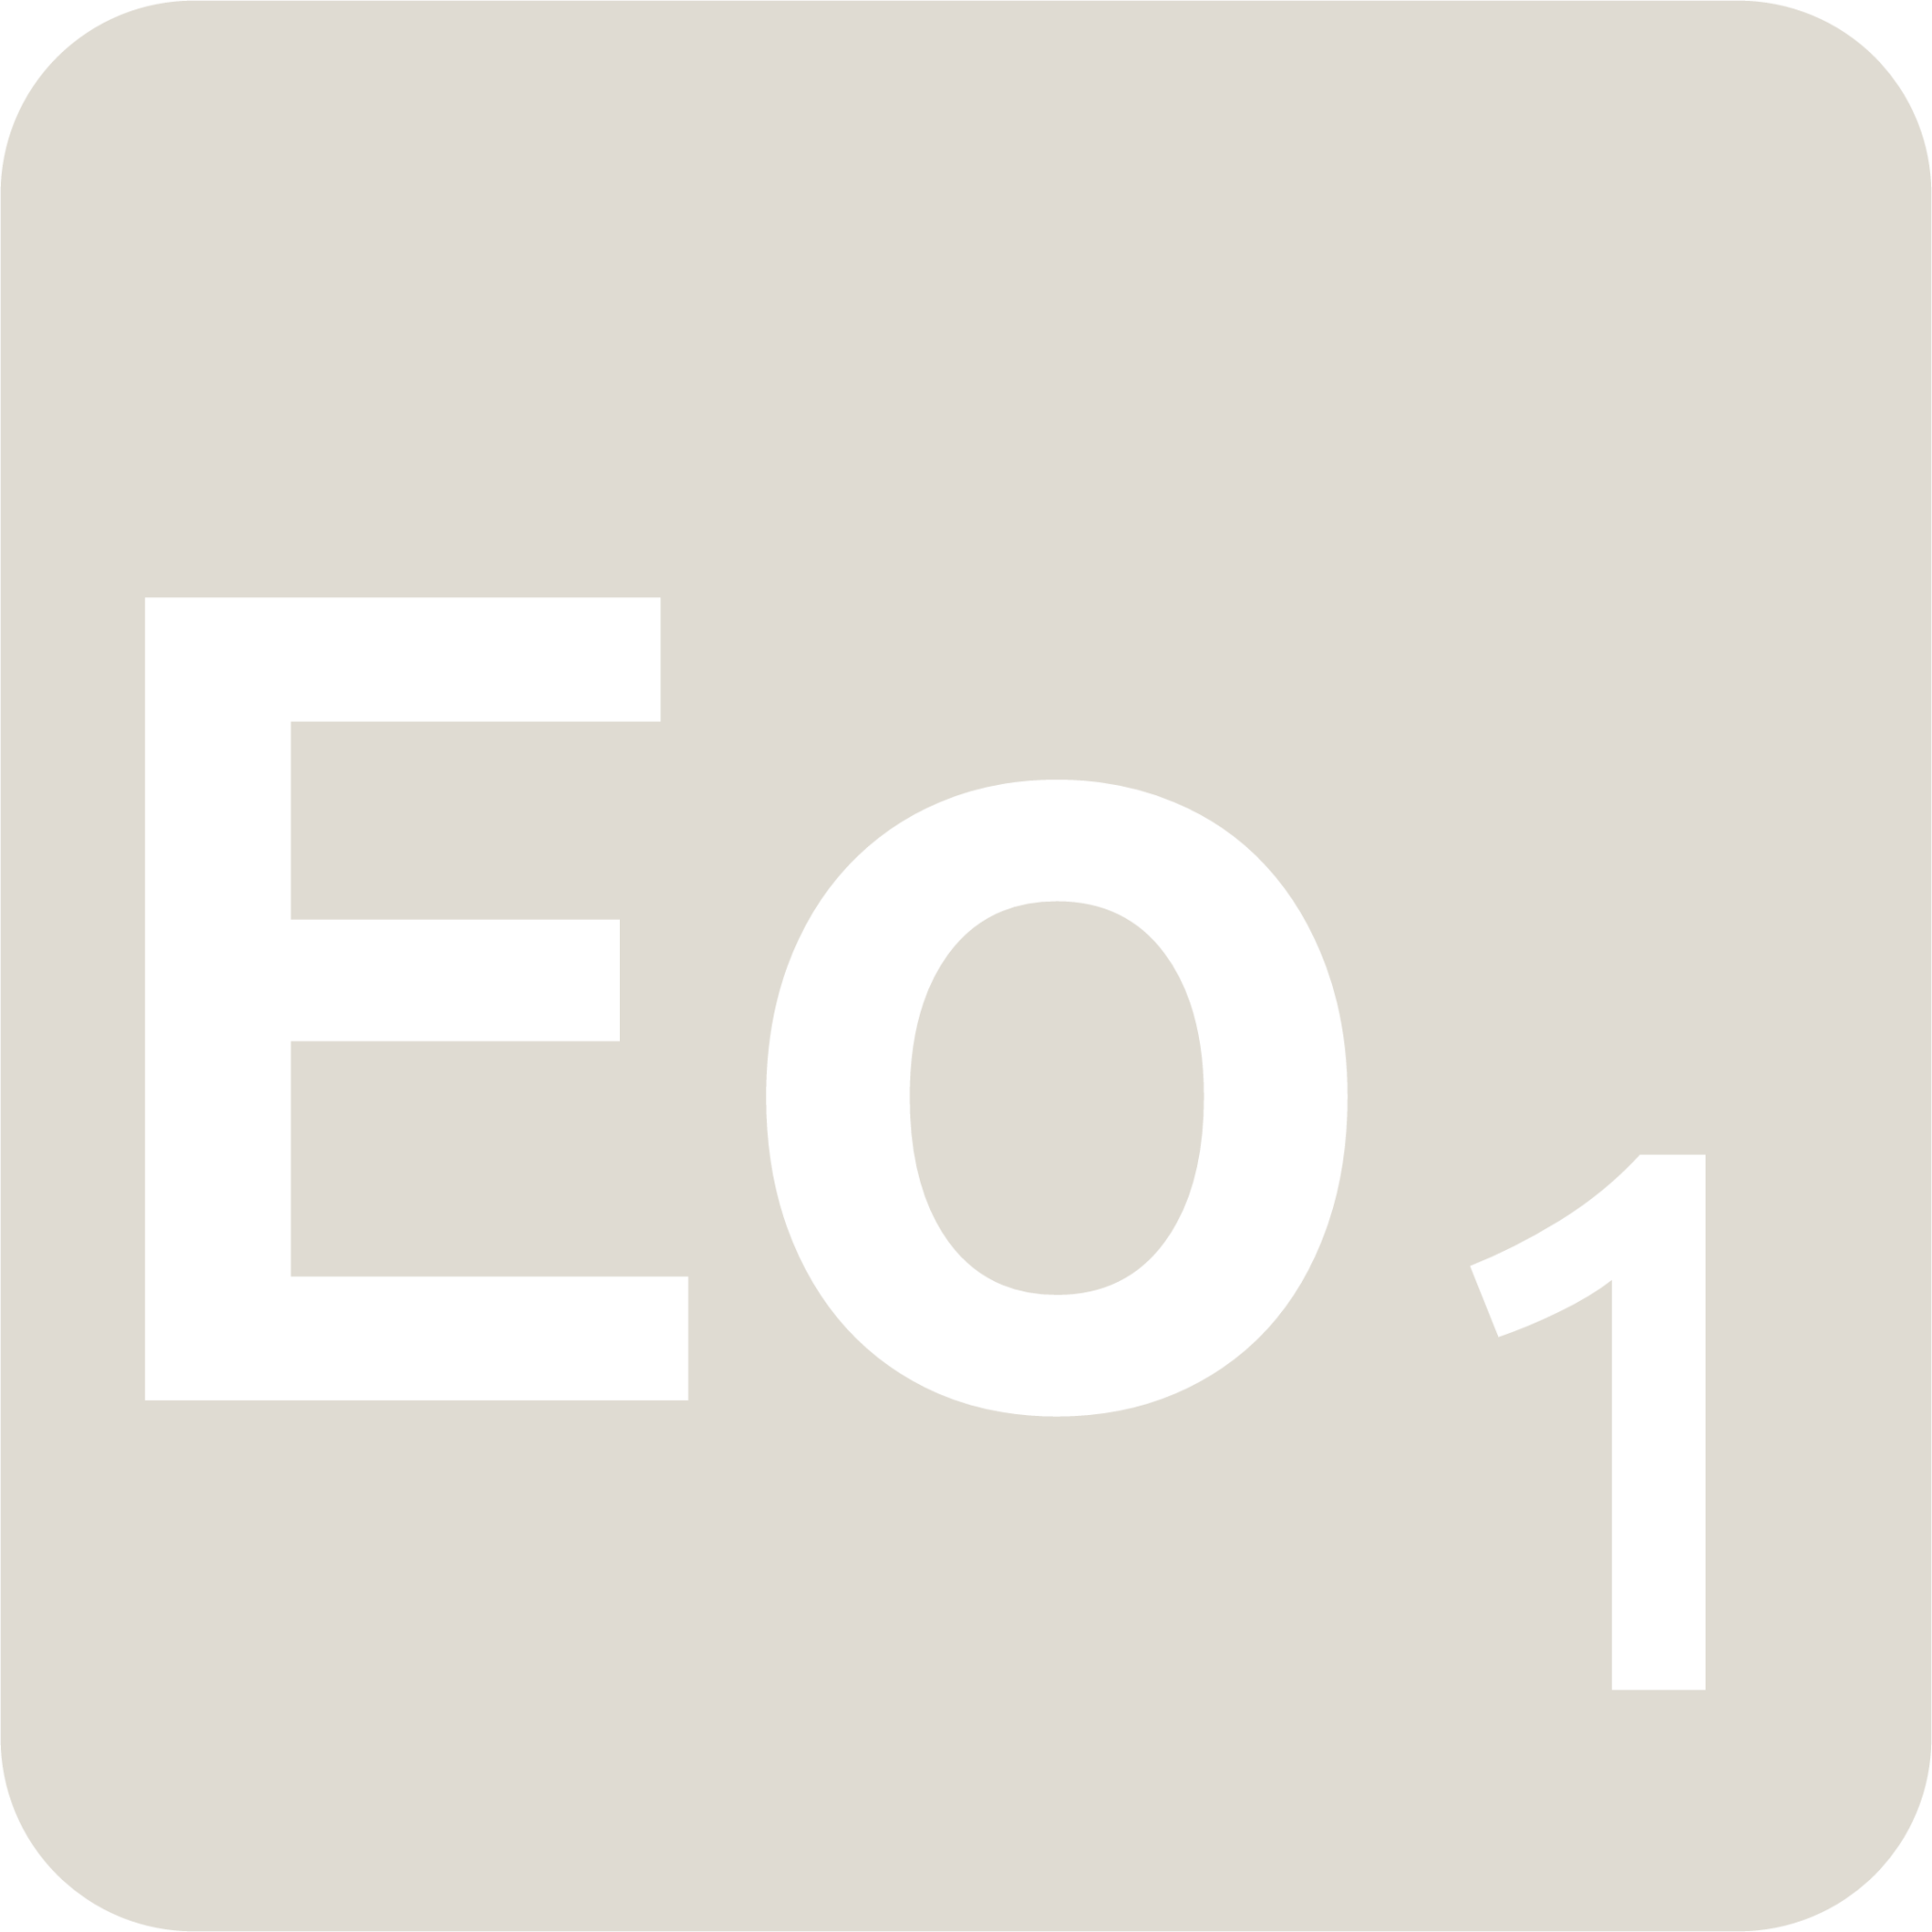 indicator keyboard Eo 1 icon